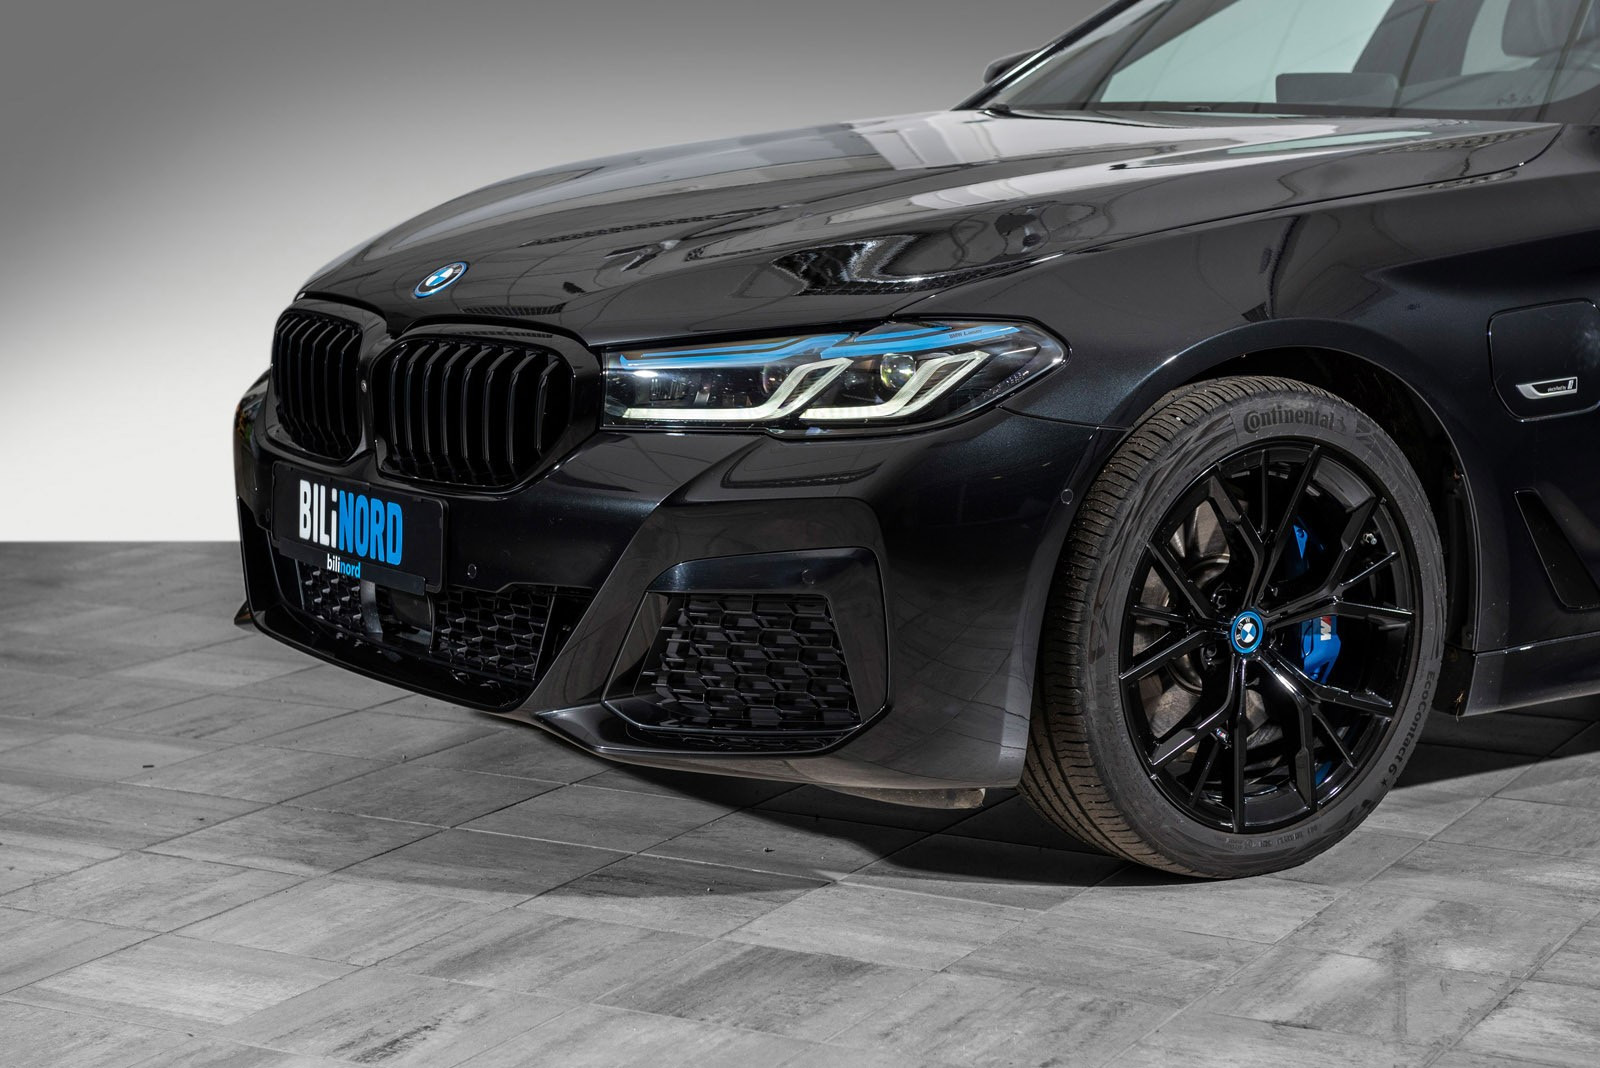 BMW xDrive omfatter alle fordelene med bakhjulsdrift, som presis styring, nøytralt veigrep i svinger og et klart skille mellom drivkraft og styring.